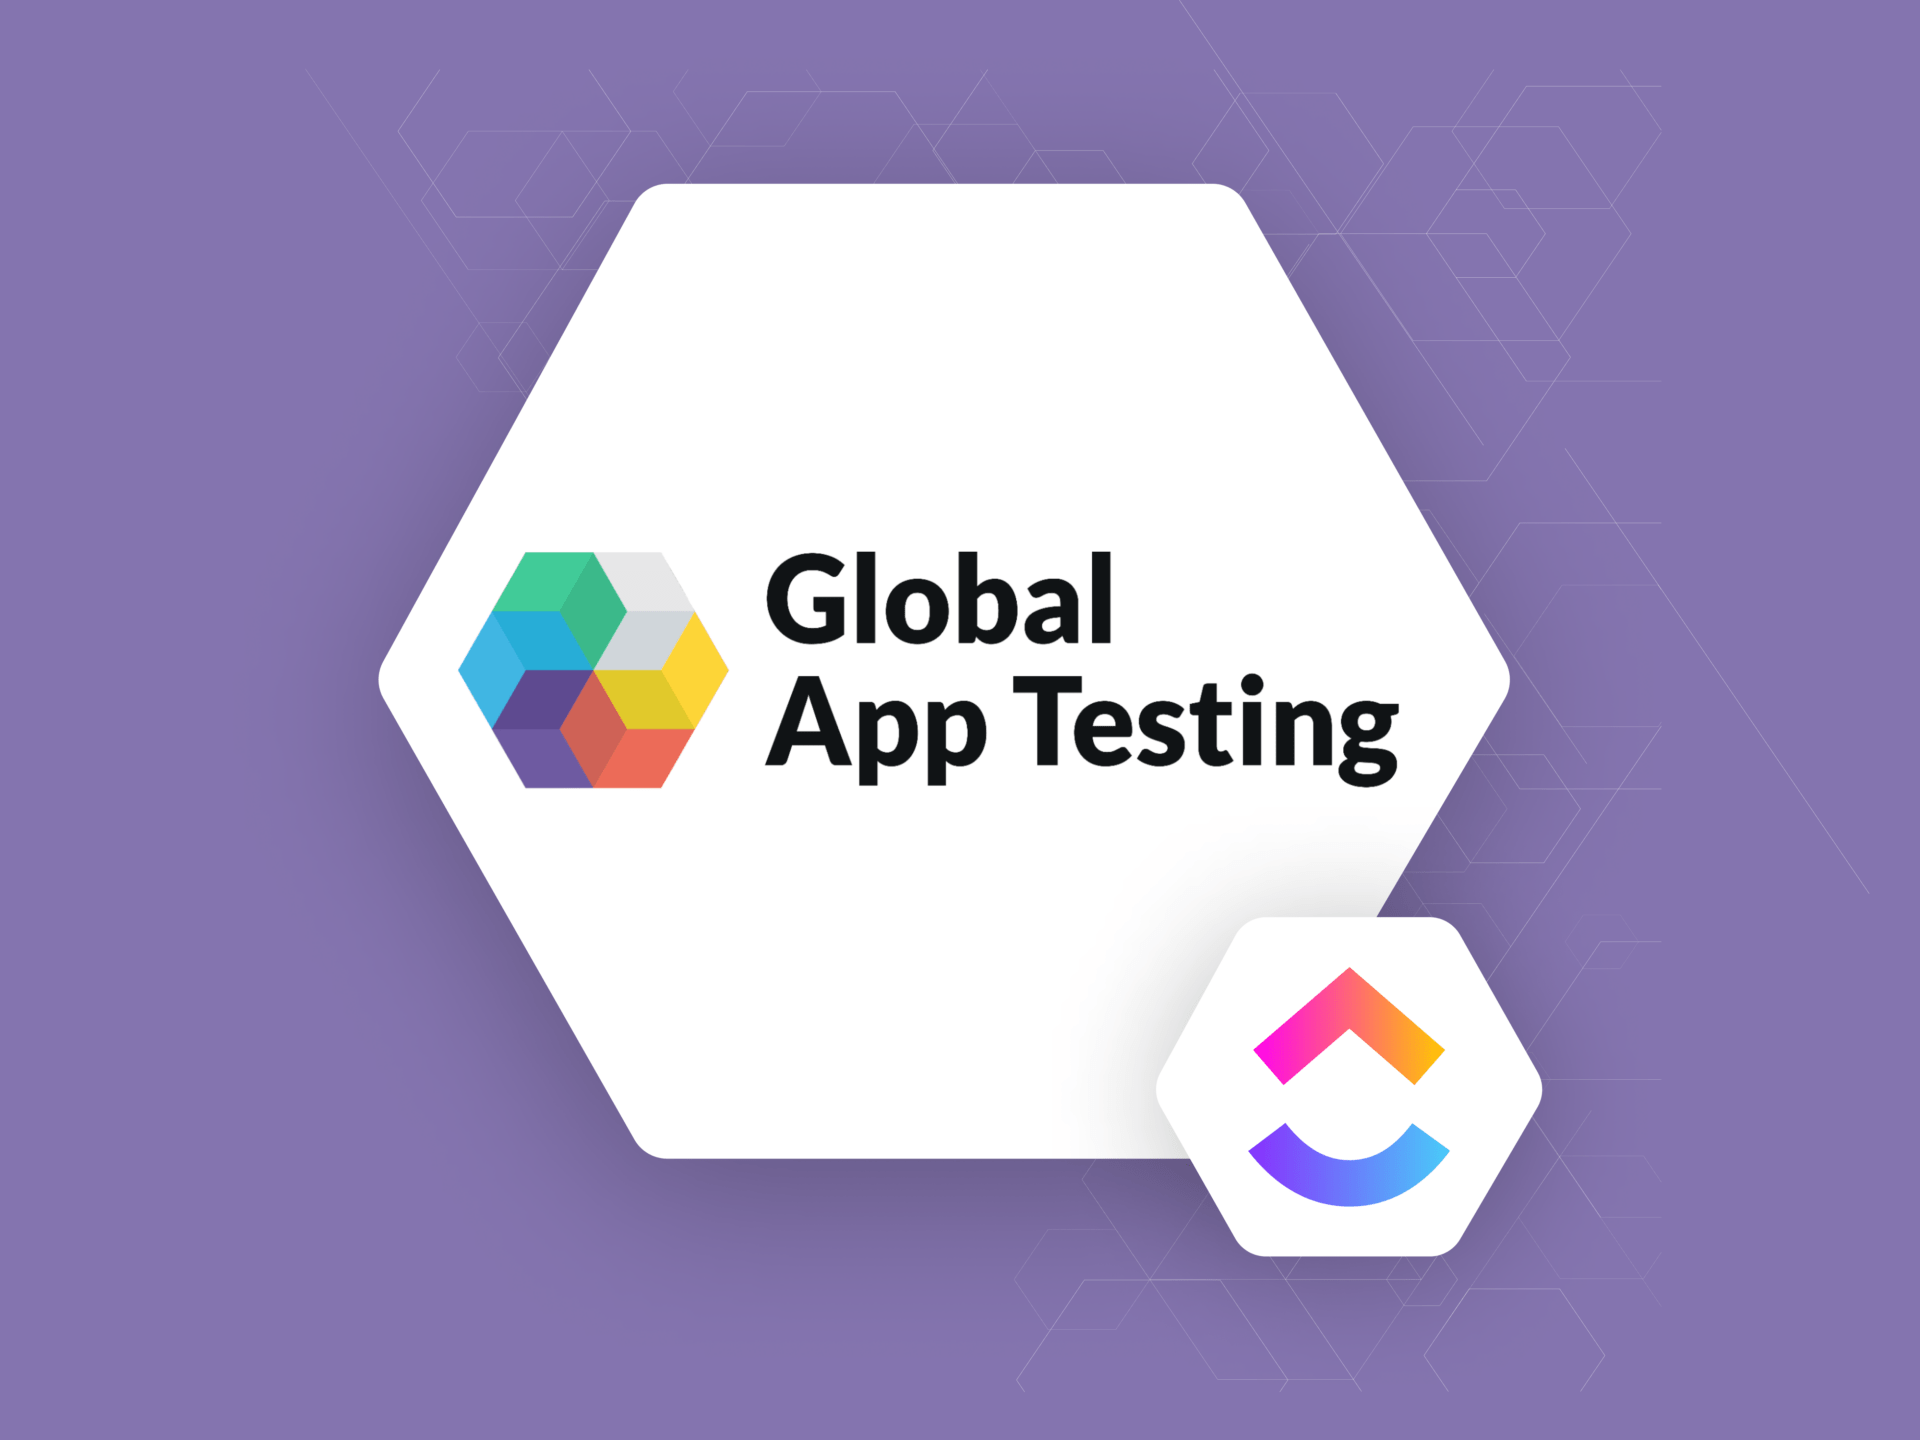 ClickUp Blog Post Global App Testing